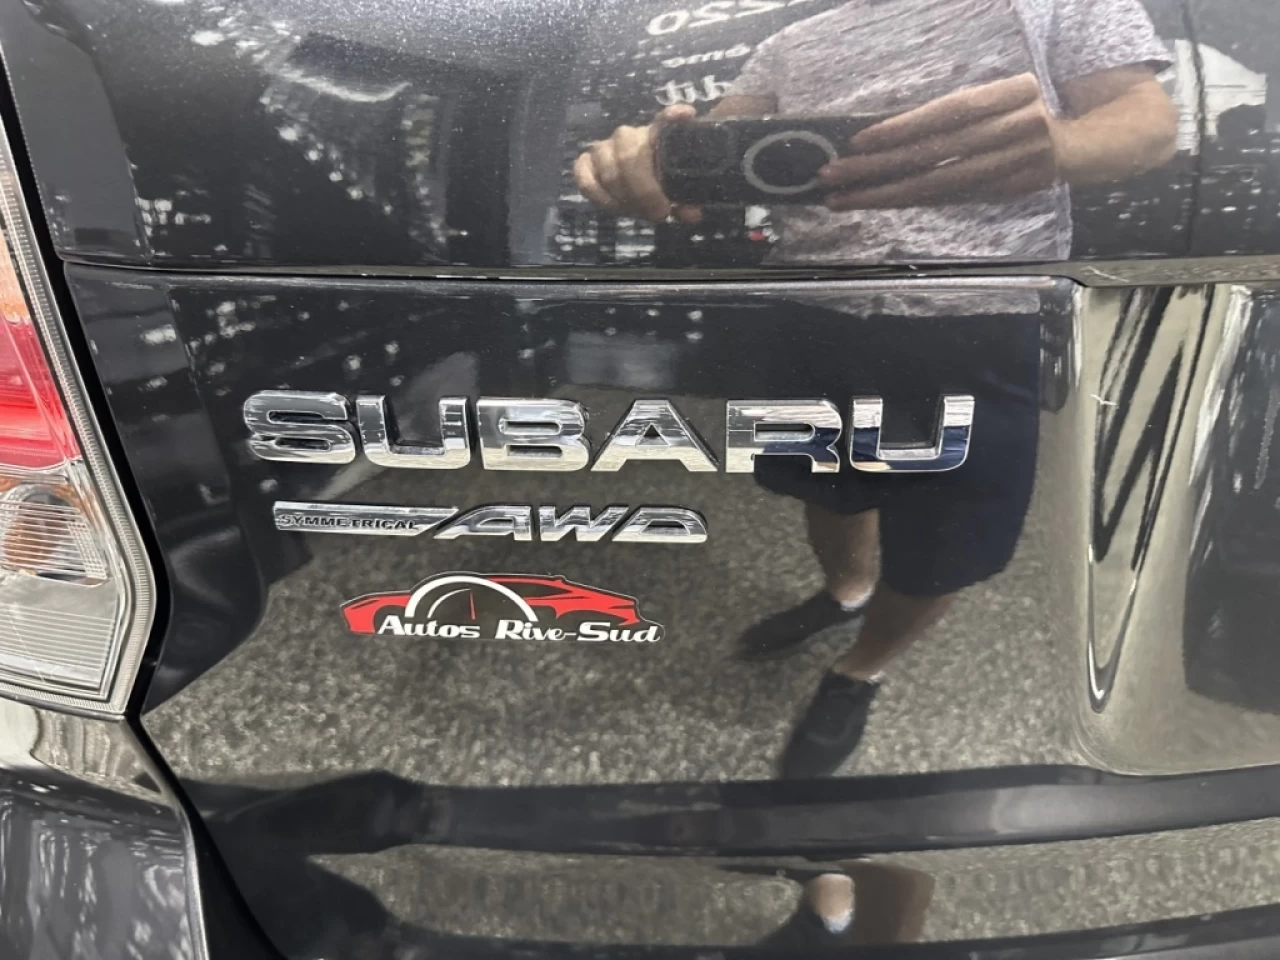 2018 Subaru Forester CONVENIENCE AWD CAMERA A/C AVEC 157KM Main Image